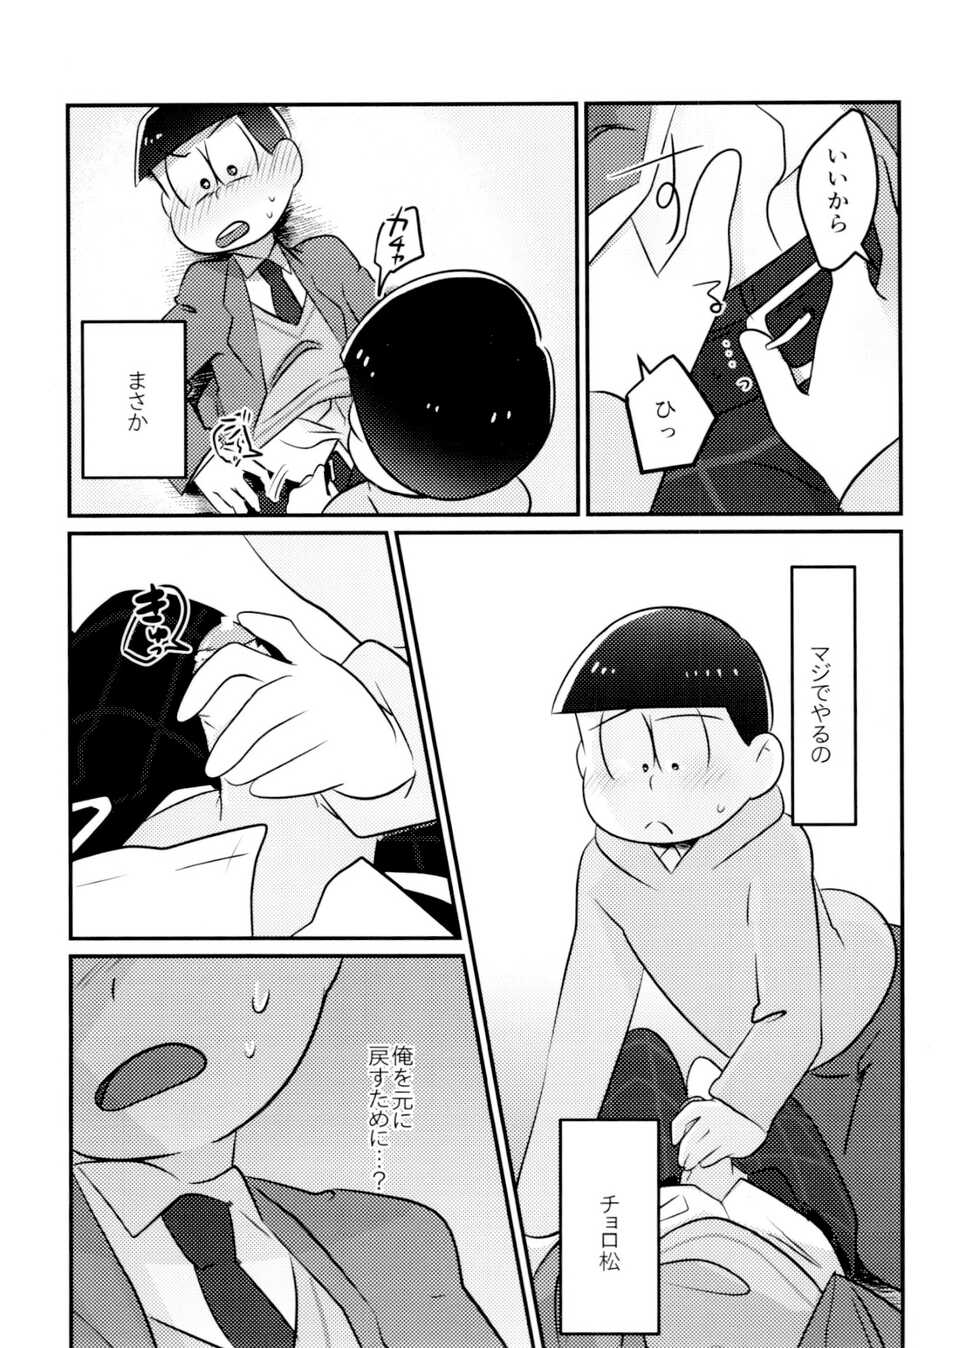 [Tsutsujishika (Tsujiuranaiko)] Kimi wa itsu kara otonana no!? (Osomatsu-San) - Page 8